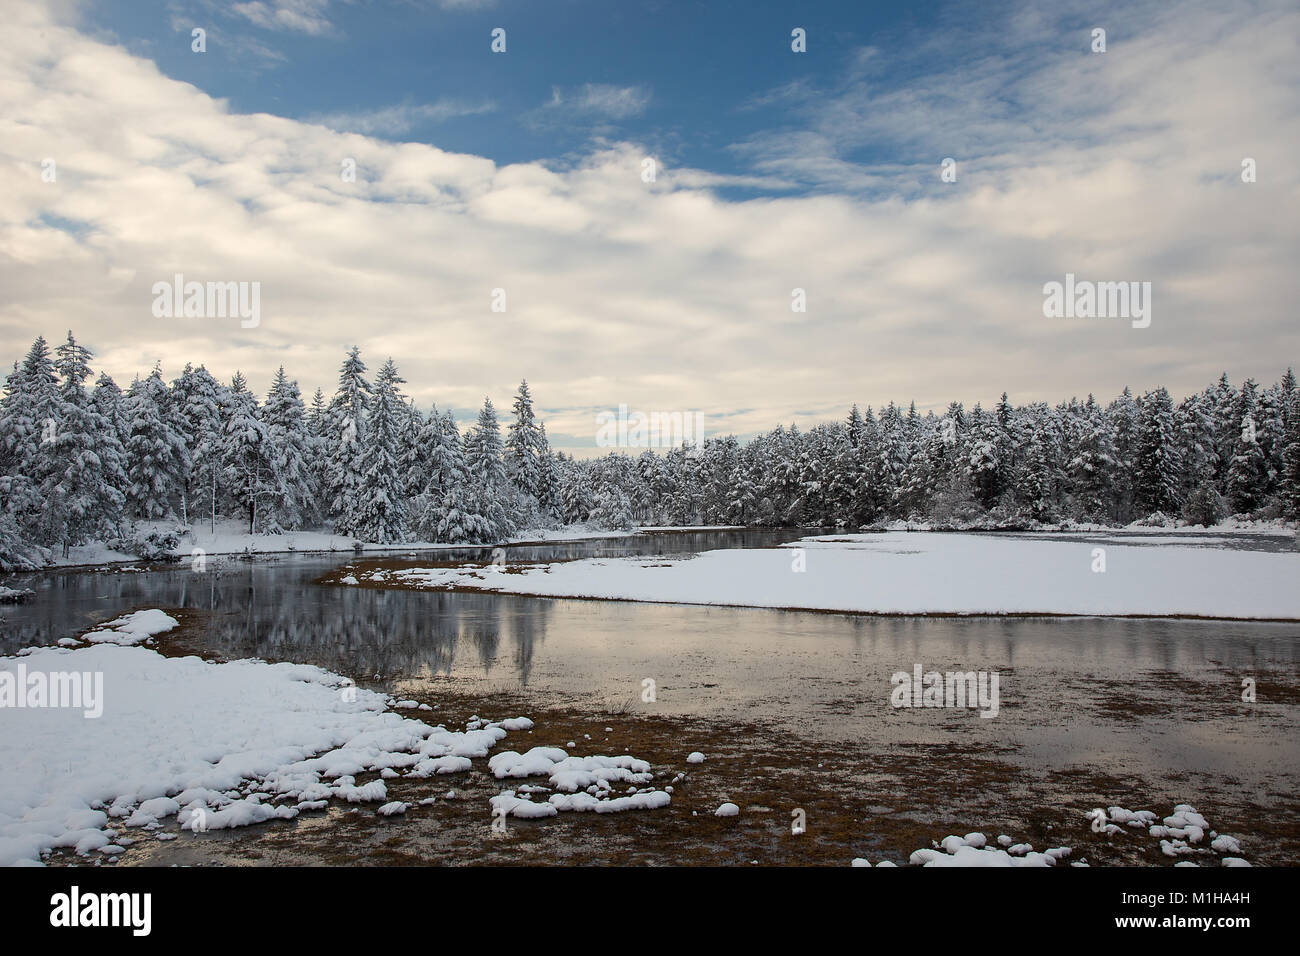 Paesaggio invernale con acqua fluente, neve e alberi innevati, Signore, Slovenia Foto Stock